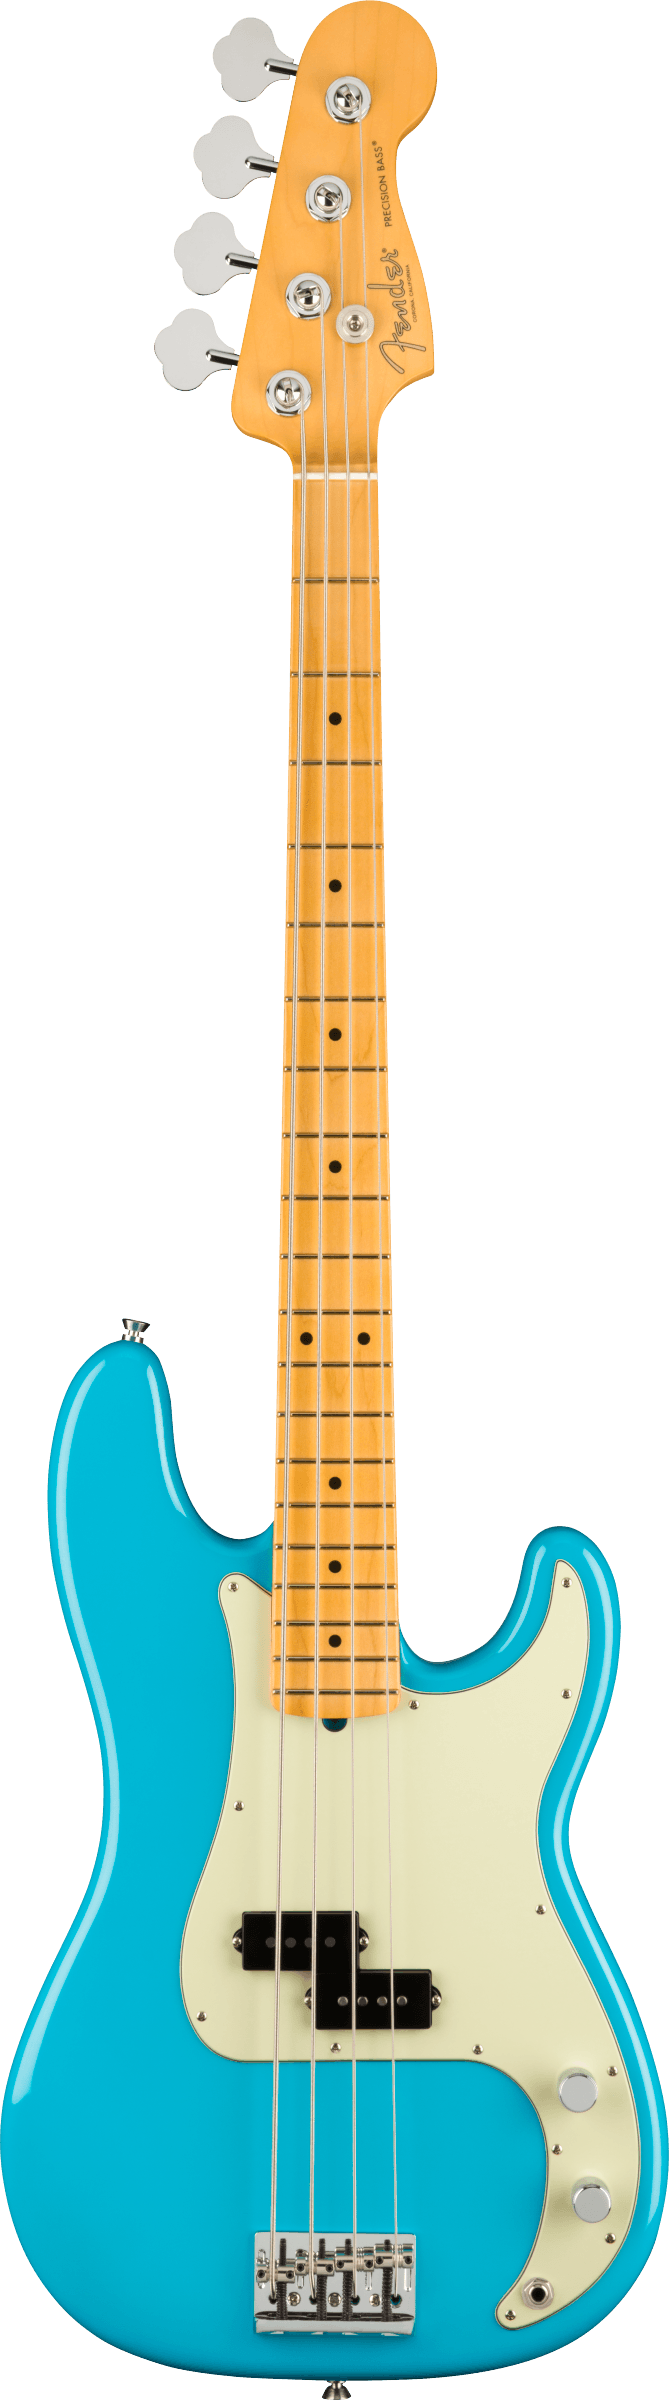 Fender Precision Bass MP in Miami Blue Tone Shop Guitars Dallas Texas